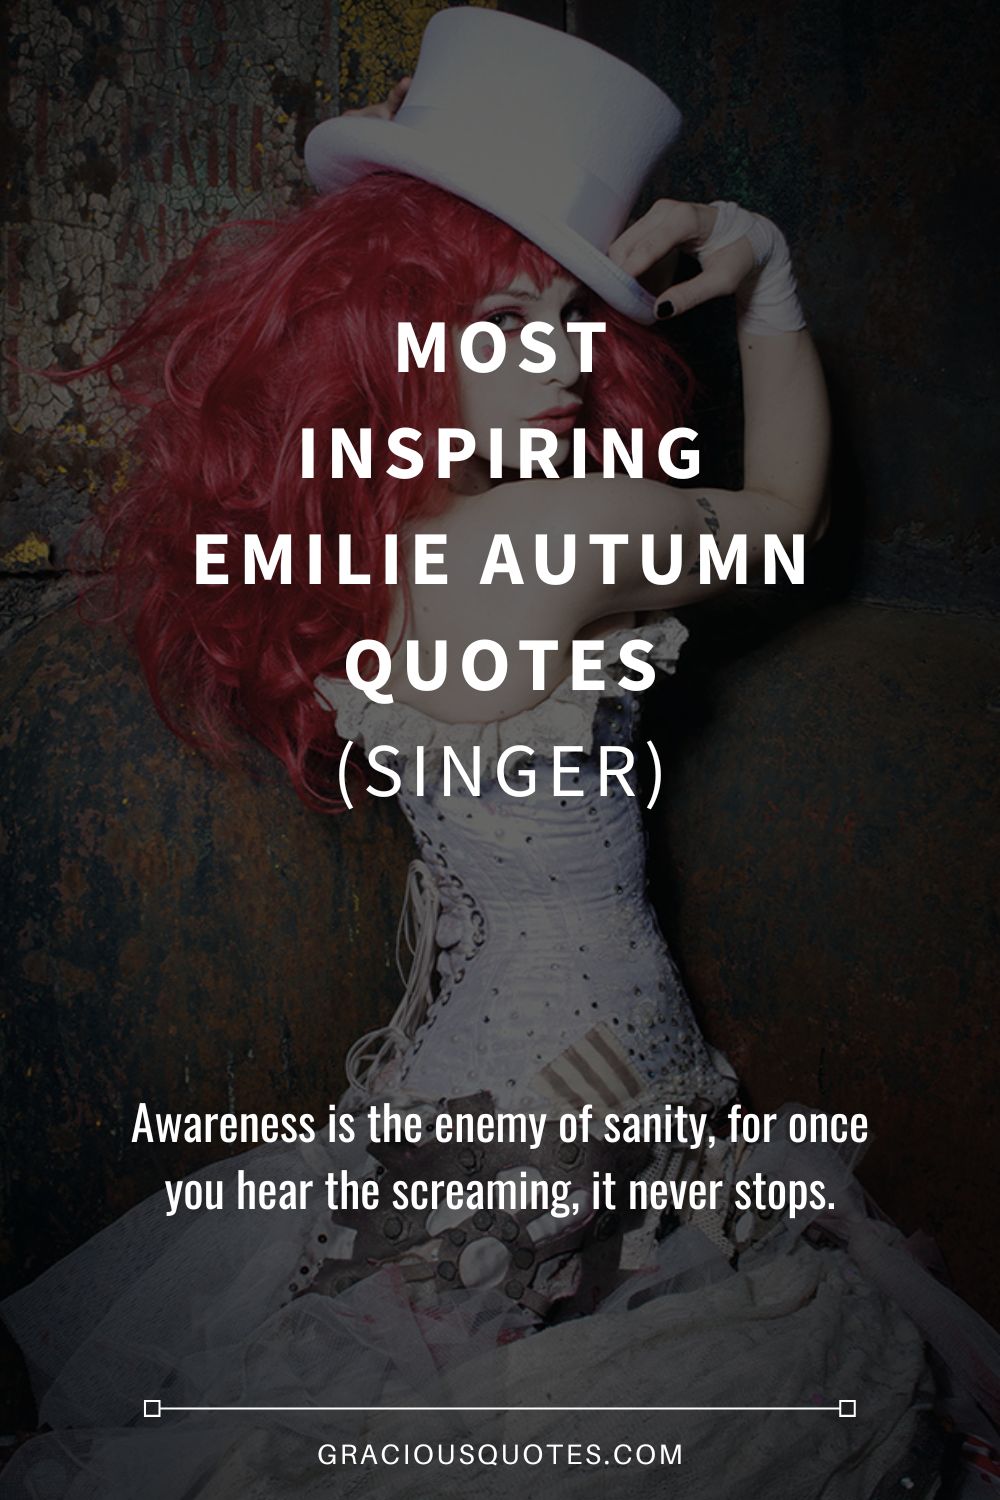 Most Inspiring Emilie Autumn Quotes (SINGER) - Gracious Quotes